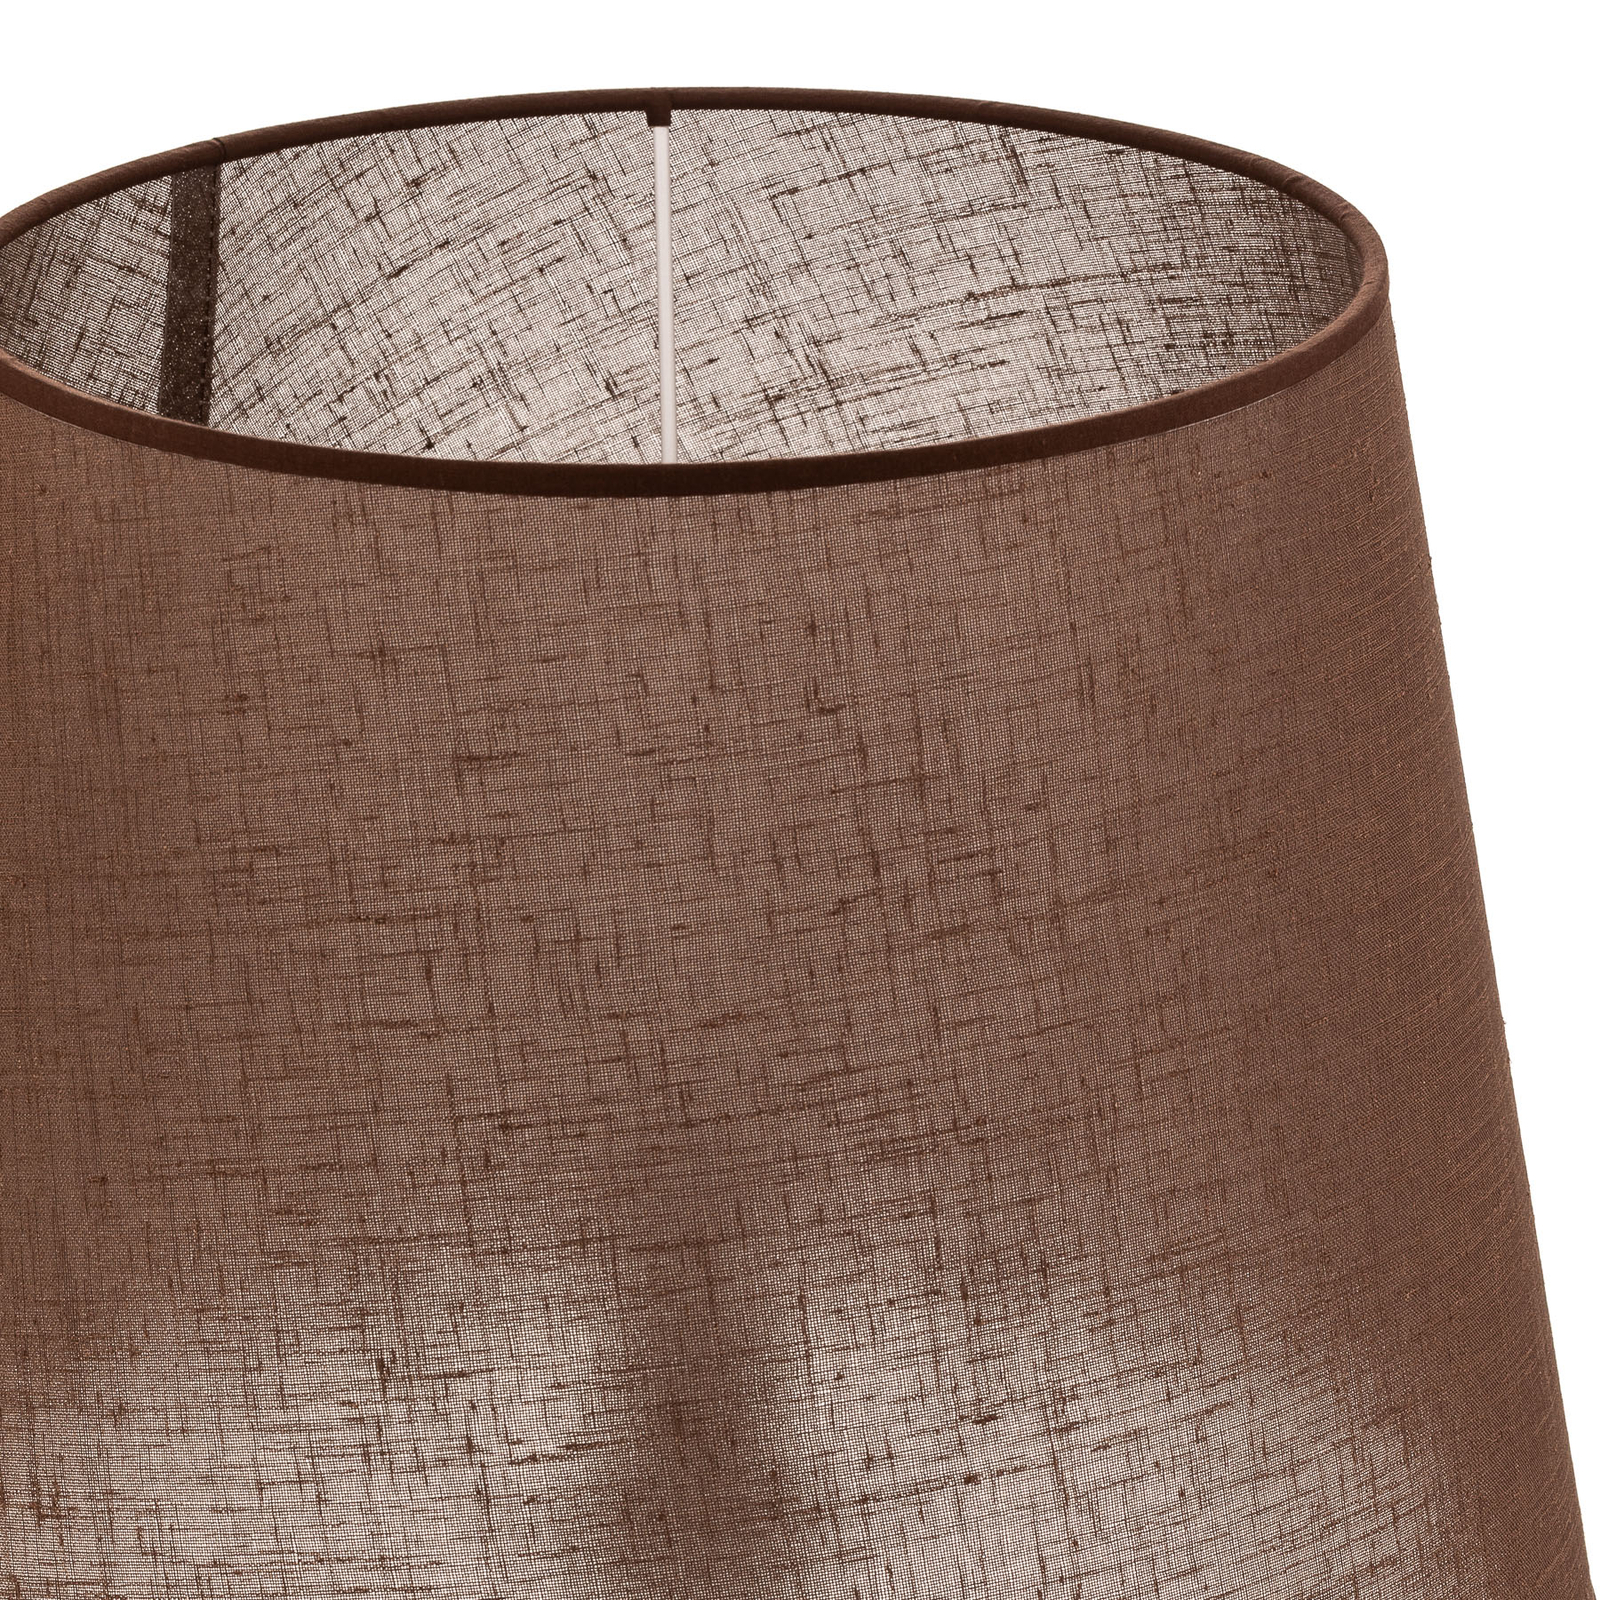 Klasikinis L formos stalinių lempų gaubtas, rudos/skaidrios spalvos